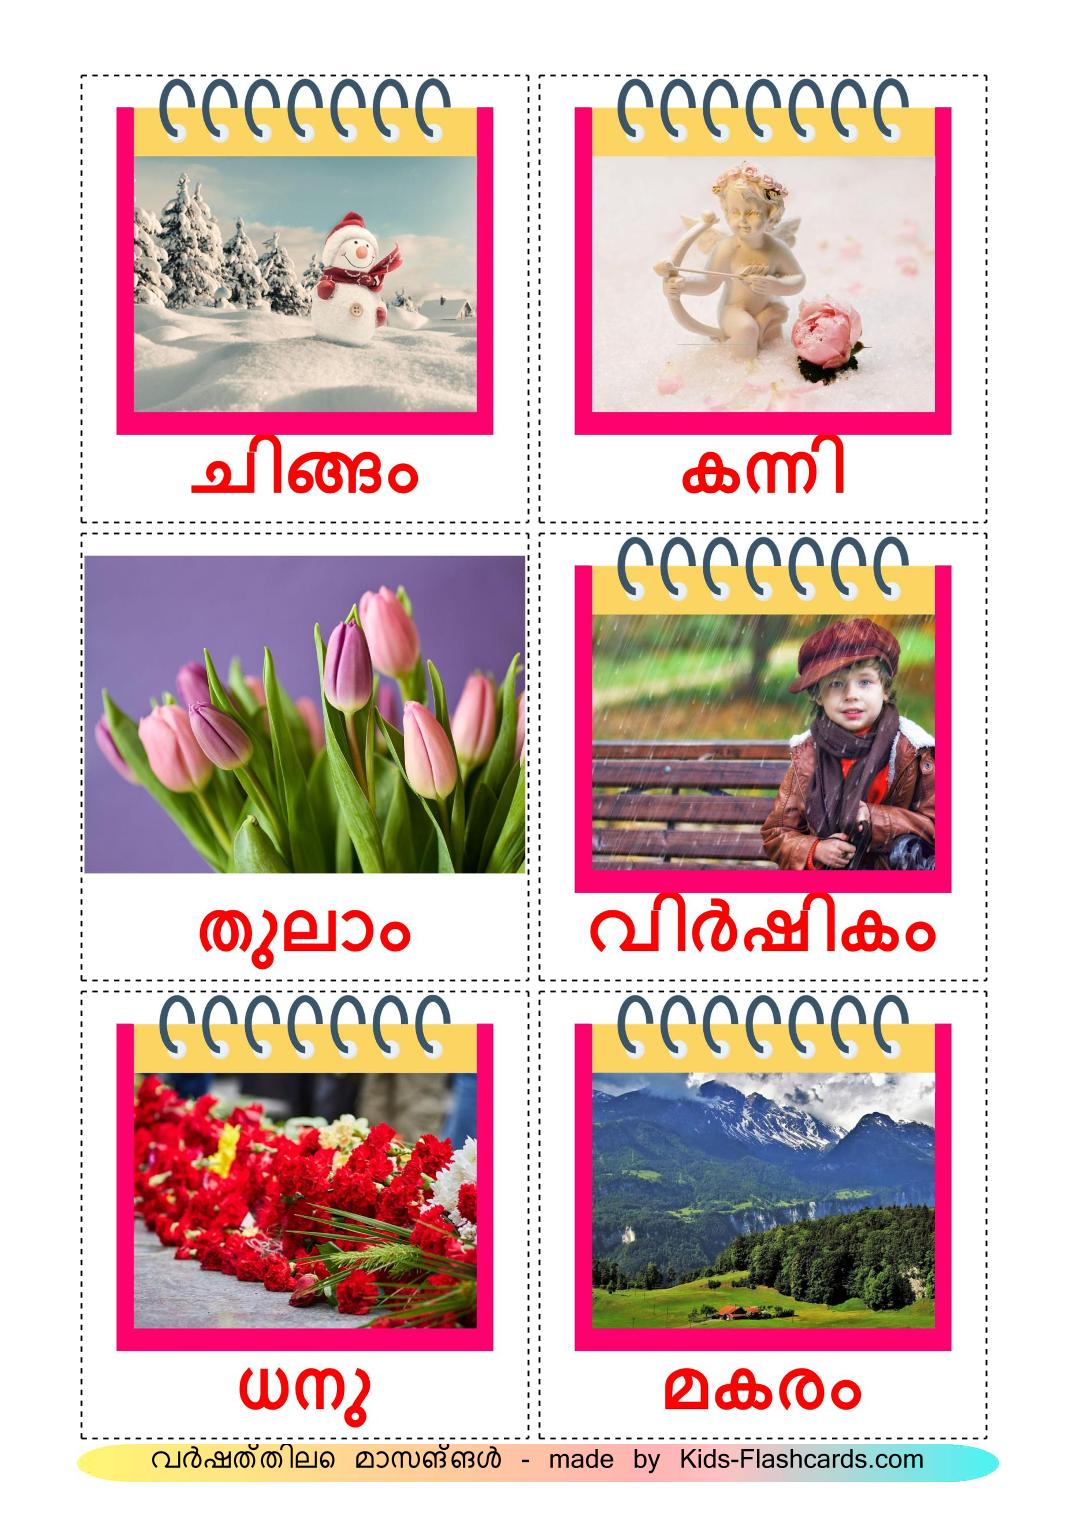 Maanden van het jaar - 12 gratis printbare malayalame kaarten